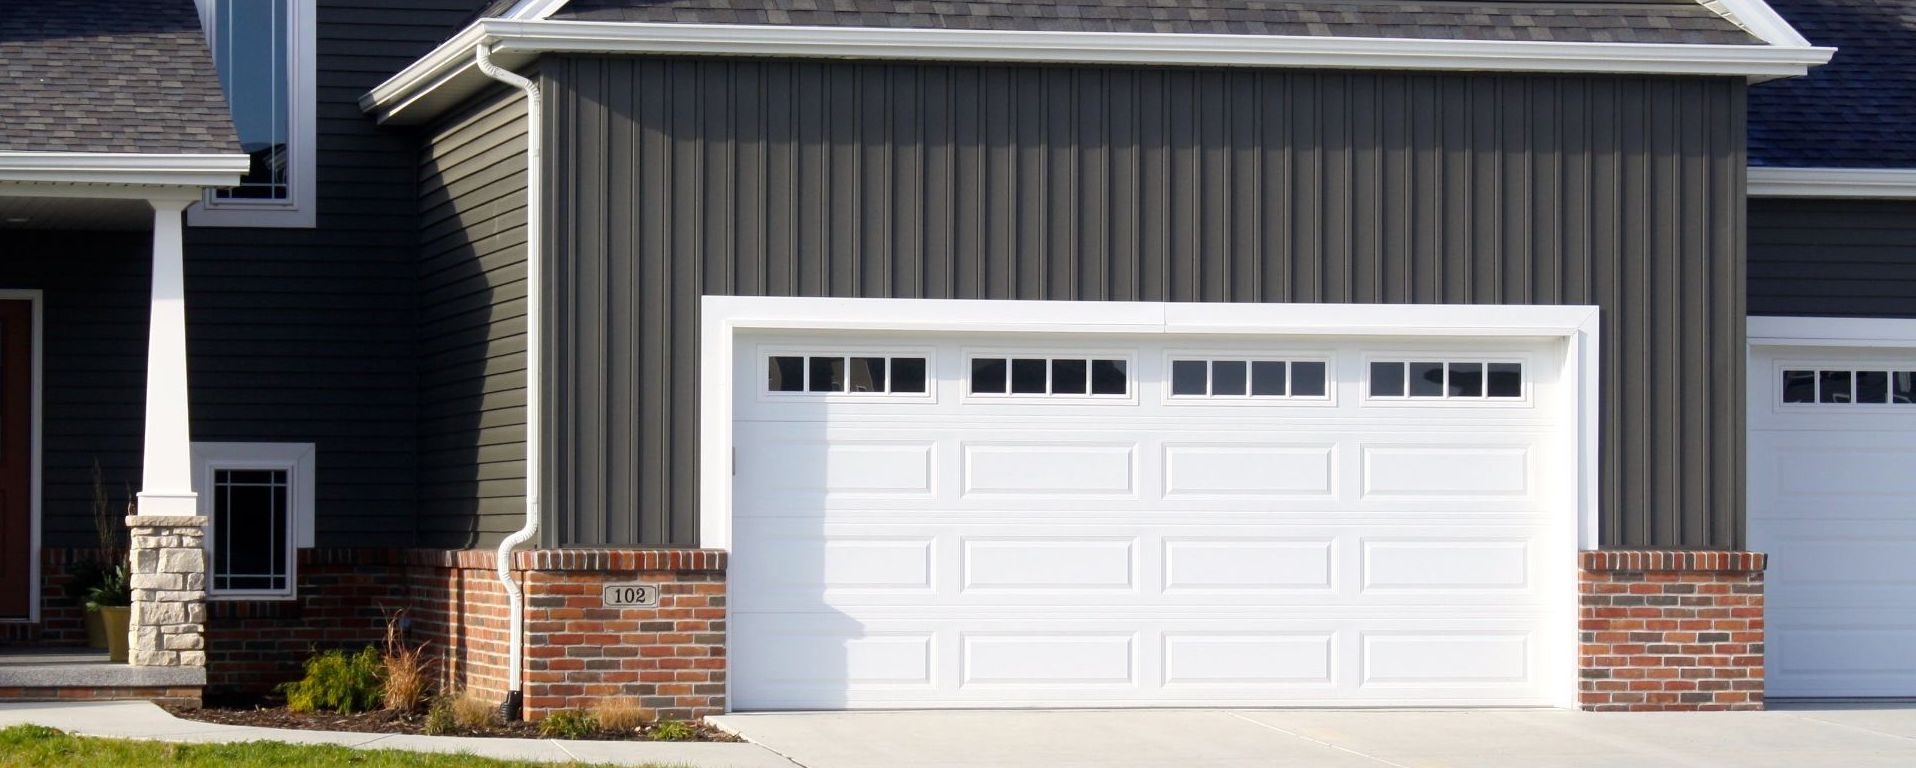 Get Expert Garage Door Repair Services in Leander, Texas Area